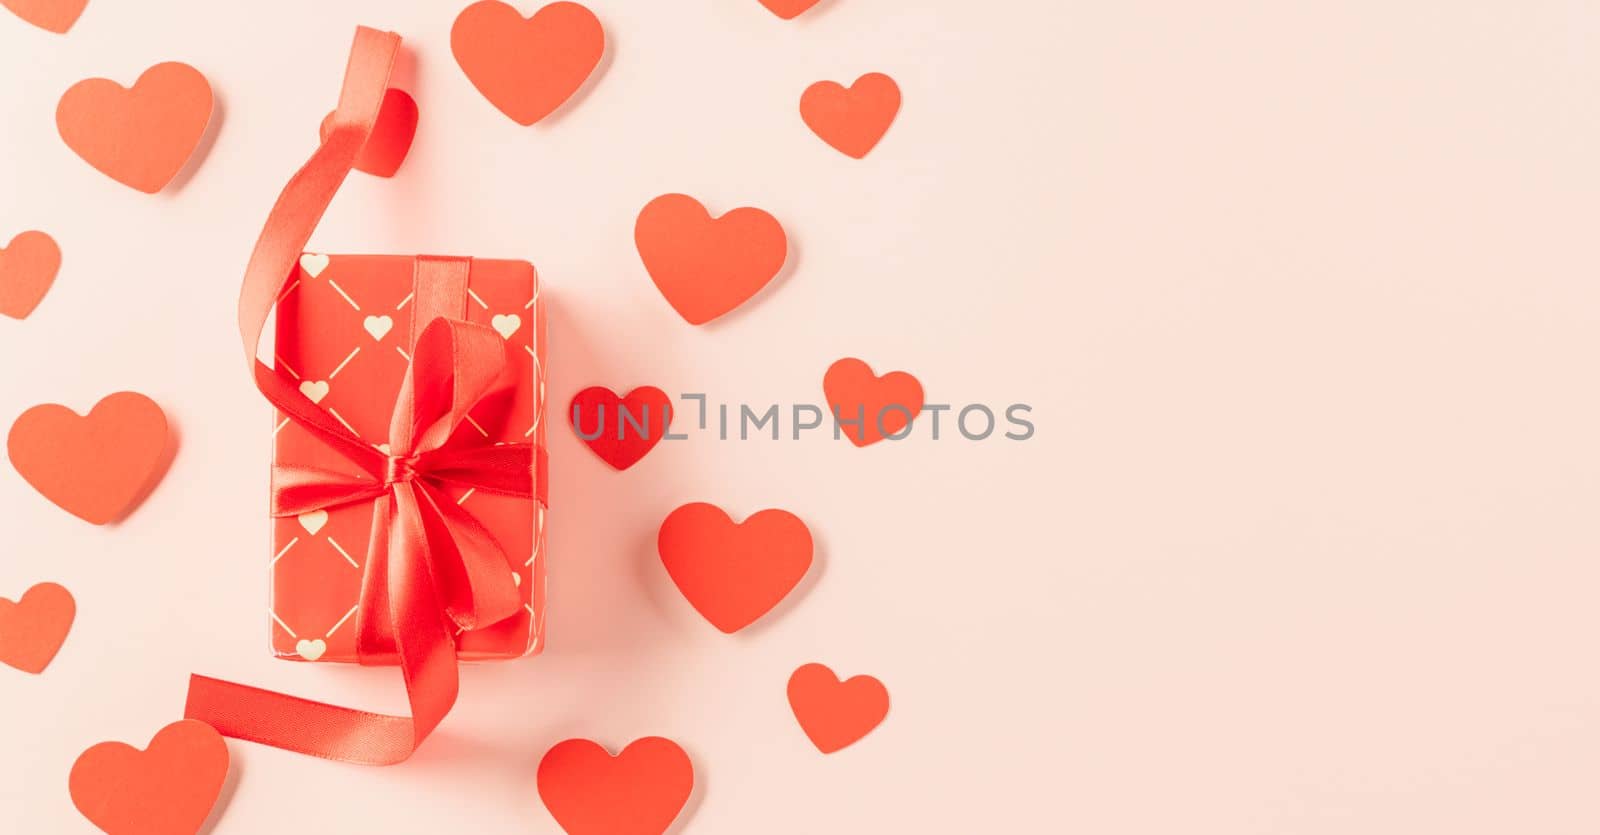 Happy Valentine's Day Background by Sorapop